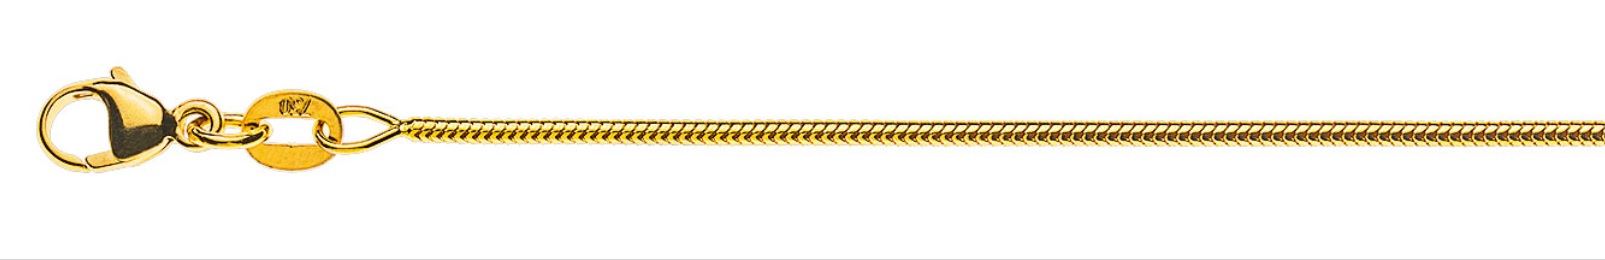 AURONOS Prestige Halskette Gelbgold 18K Schlangenkette 40cm 1.2mm